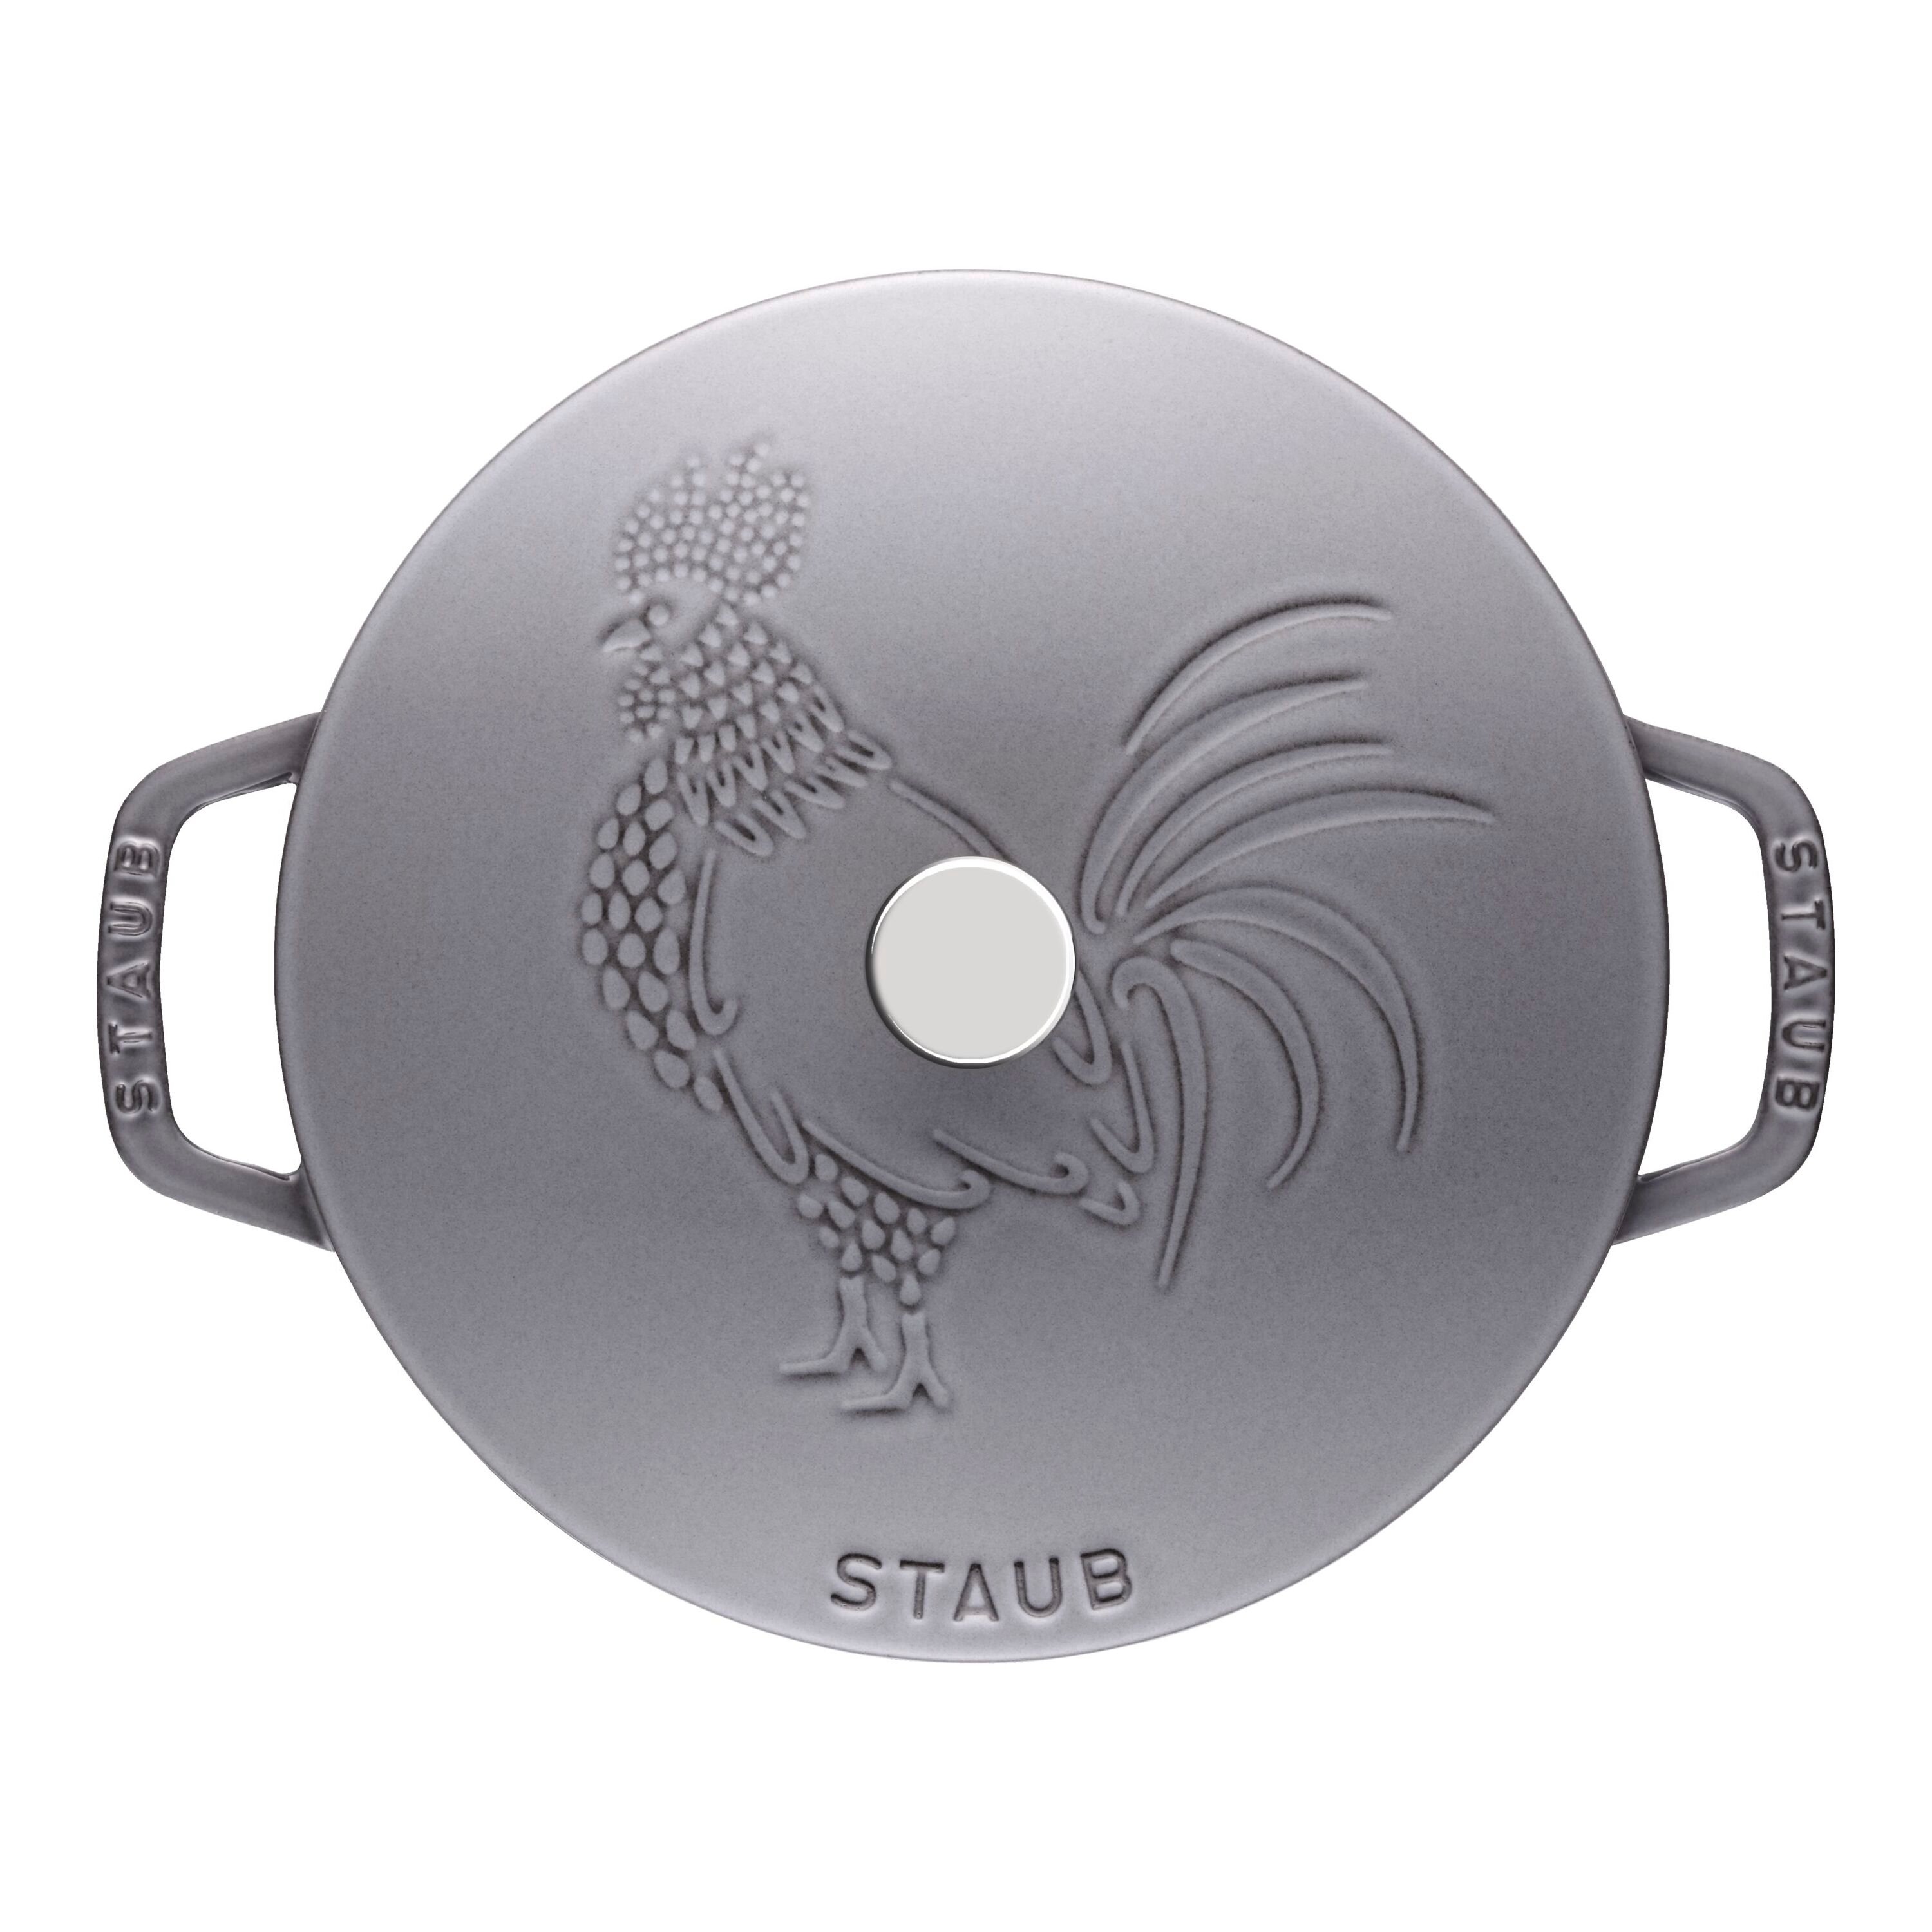  Staub 4.75-qt Stainless Steel Steamer Insert: Home & Kitchen